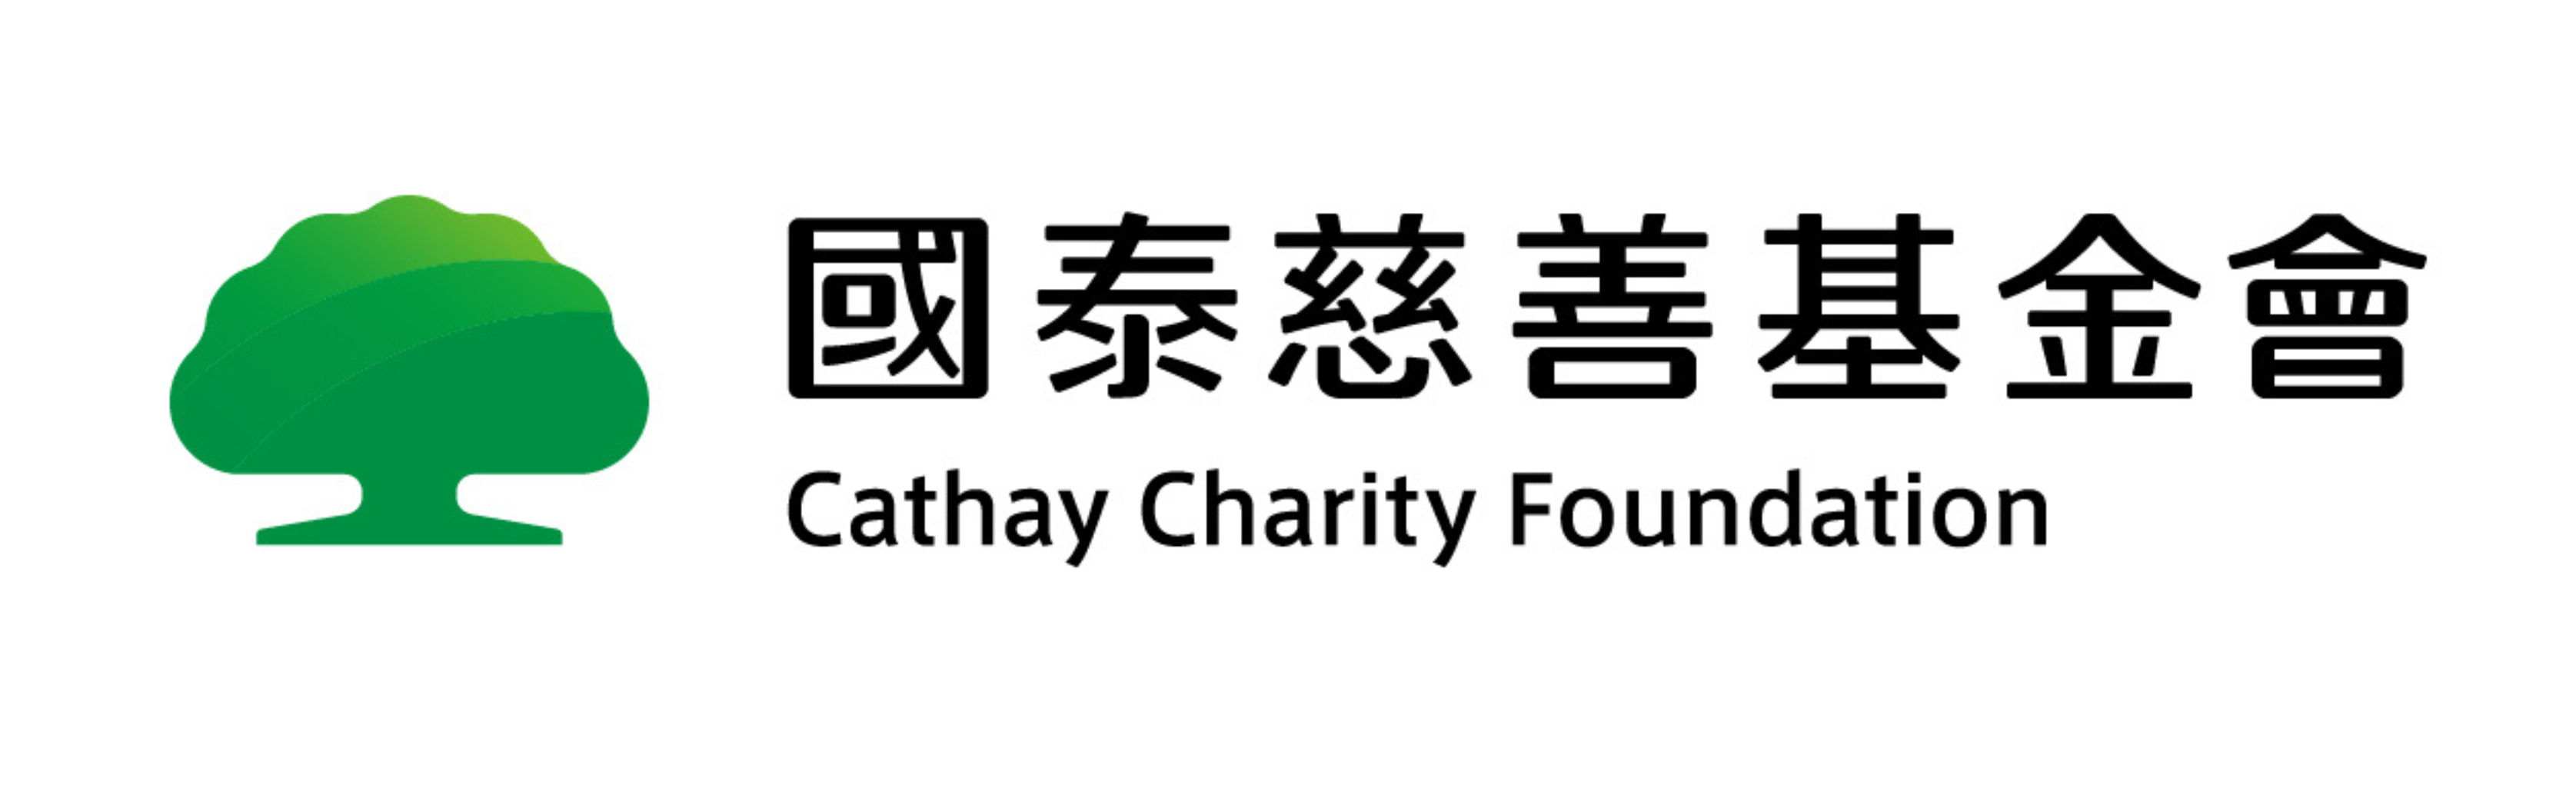 國泰慈善基金會